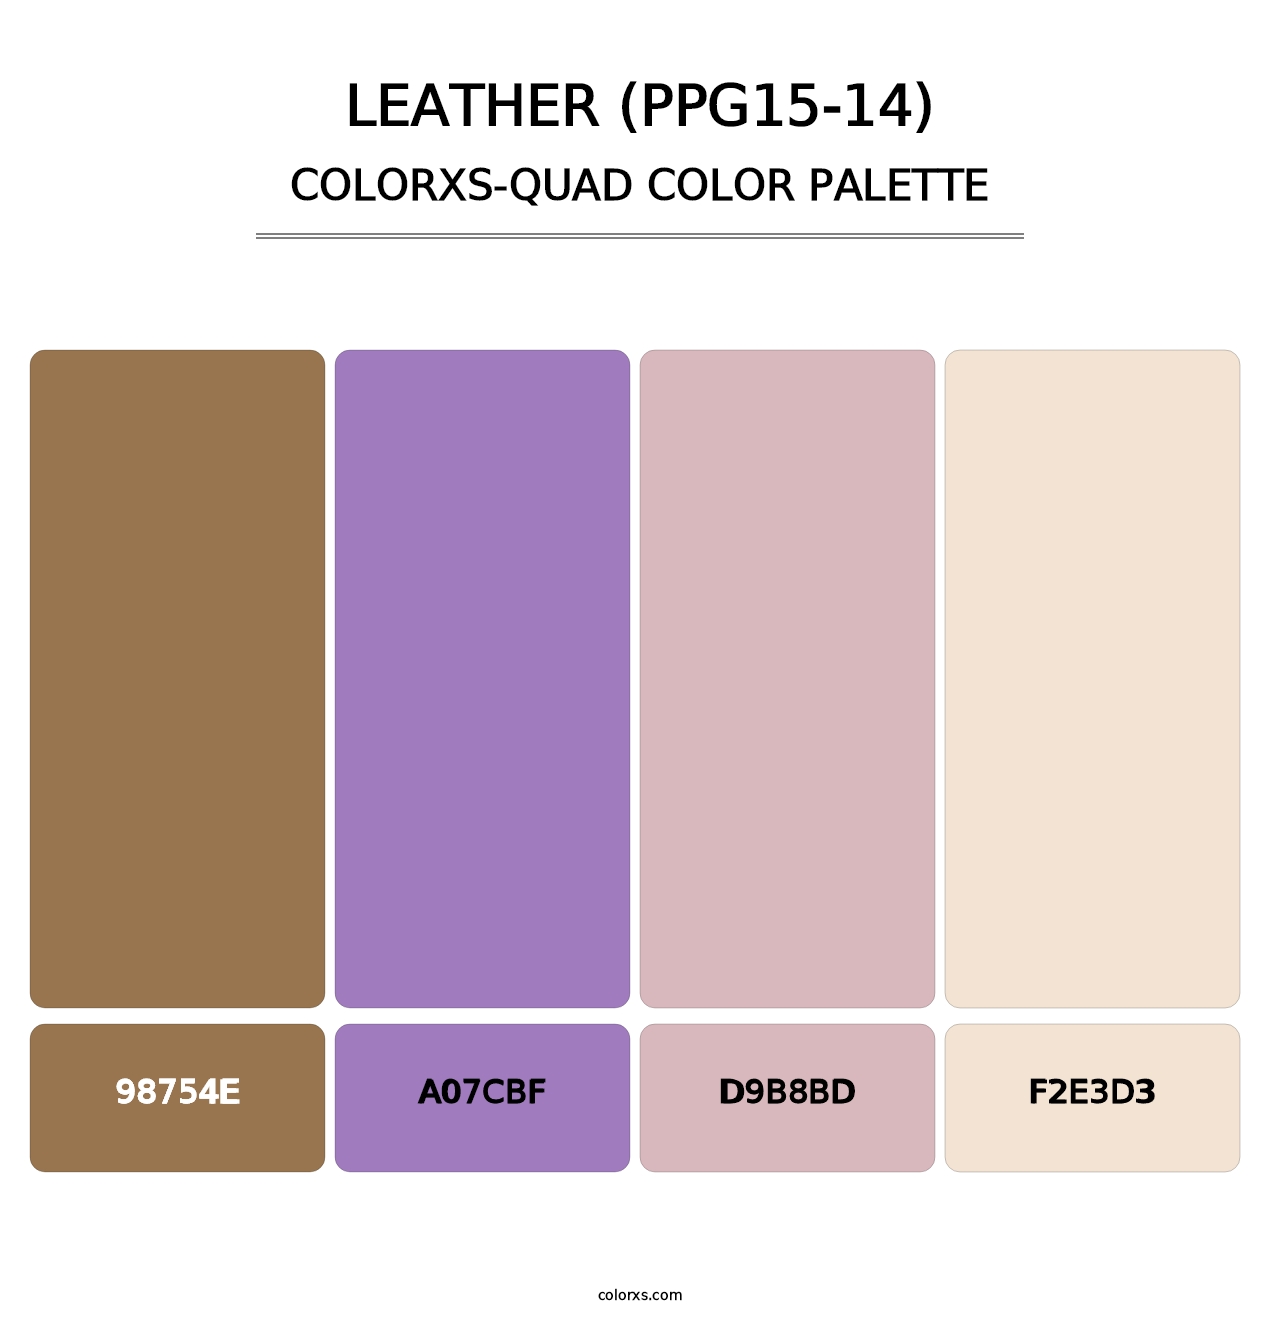 Leather (PPG15-14) - Colorxs Quad Palette